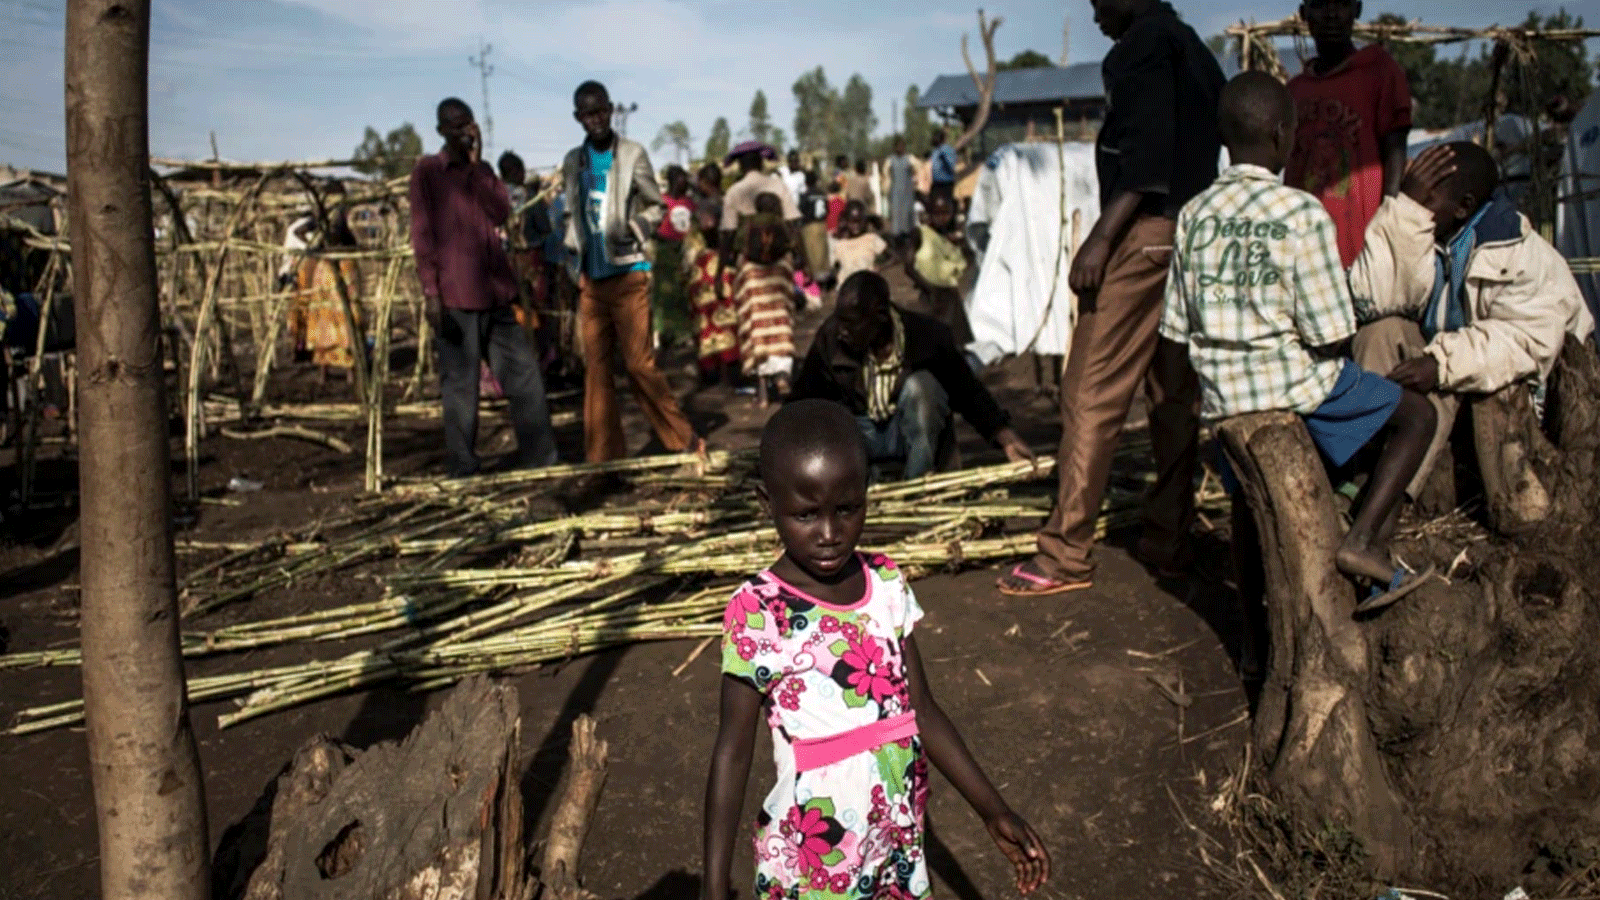  فتاة كونغولية نازحة تذهب لملء زجاجة مياه داخل مخيم للنازحين ، في بونيا ، مقاطعة إيتوري ، جمهورية الكونغو الديمقراطية ، 2 مارس 2018 ، مع استمرار العنف بين مجتمعات هيما وليندو في المنطقة.